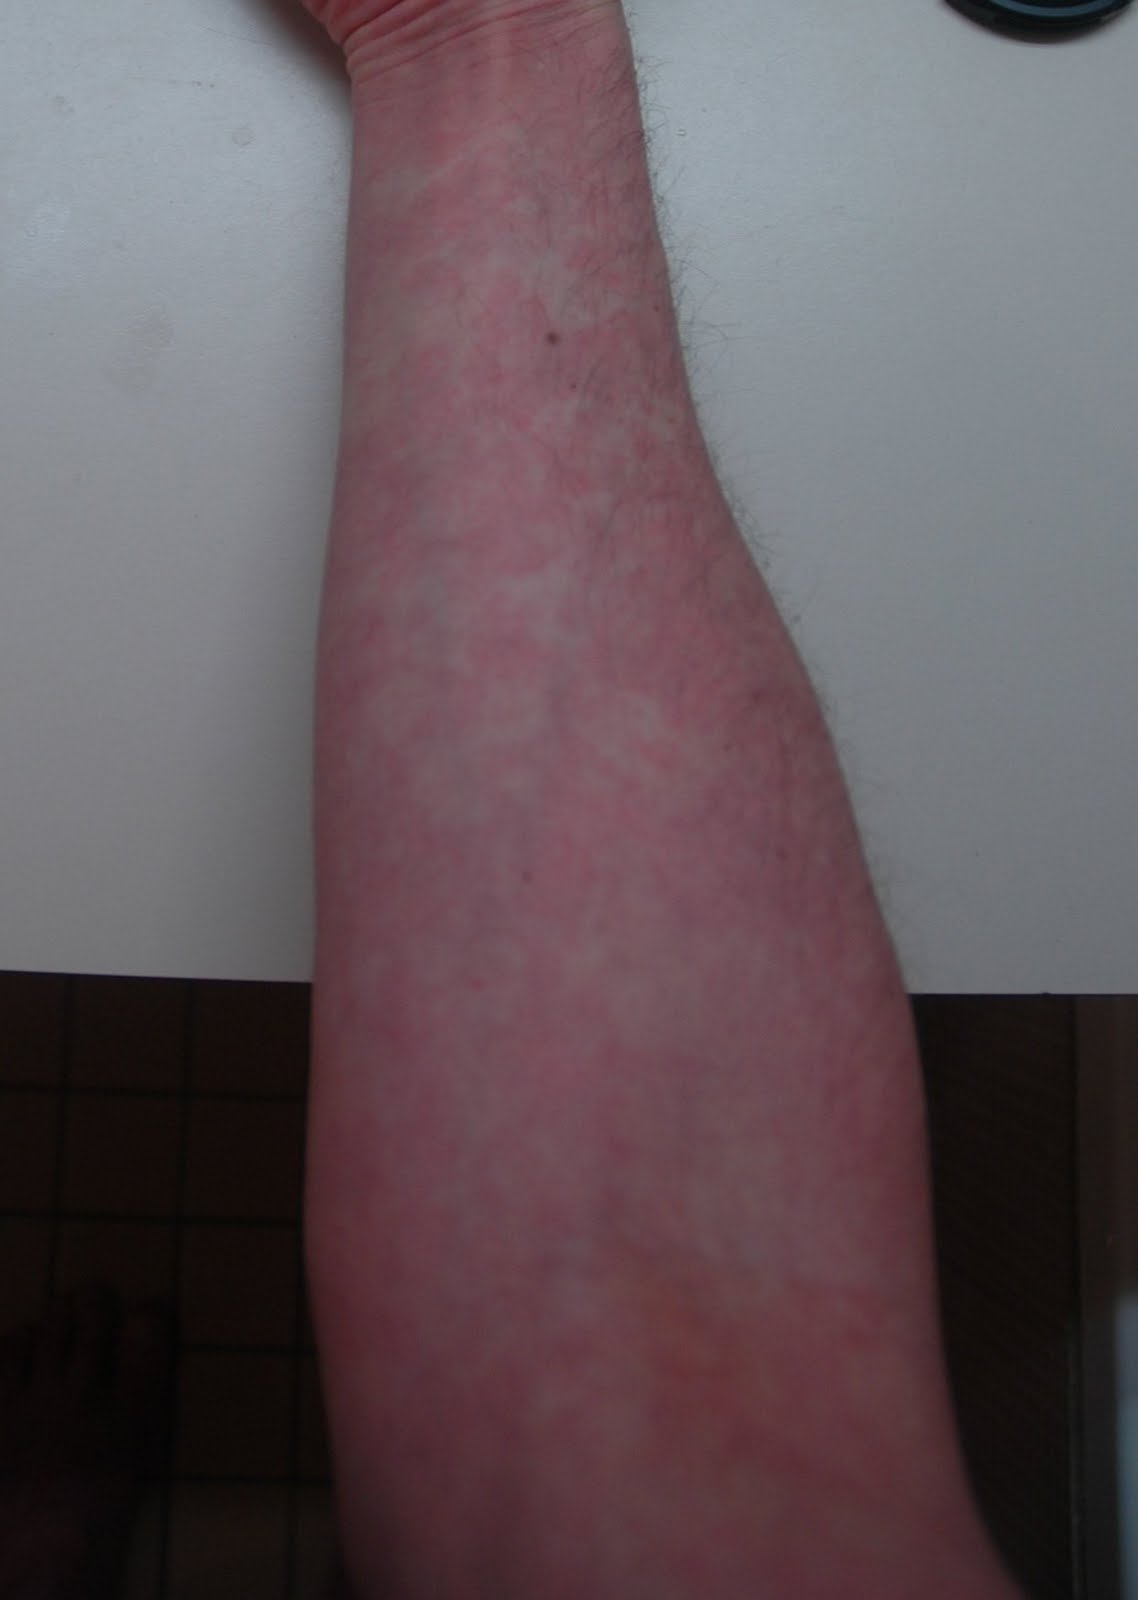 rash on my forearm #11